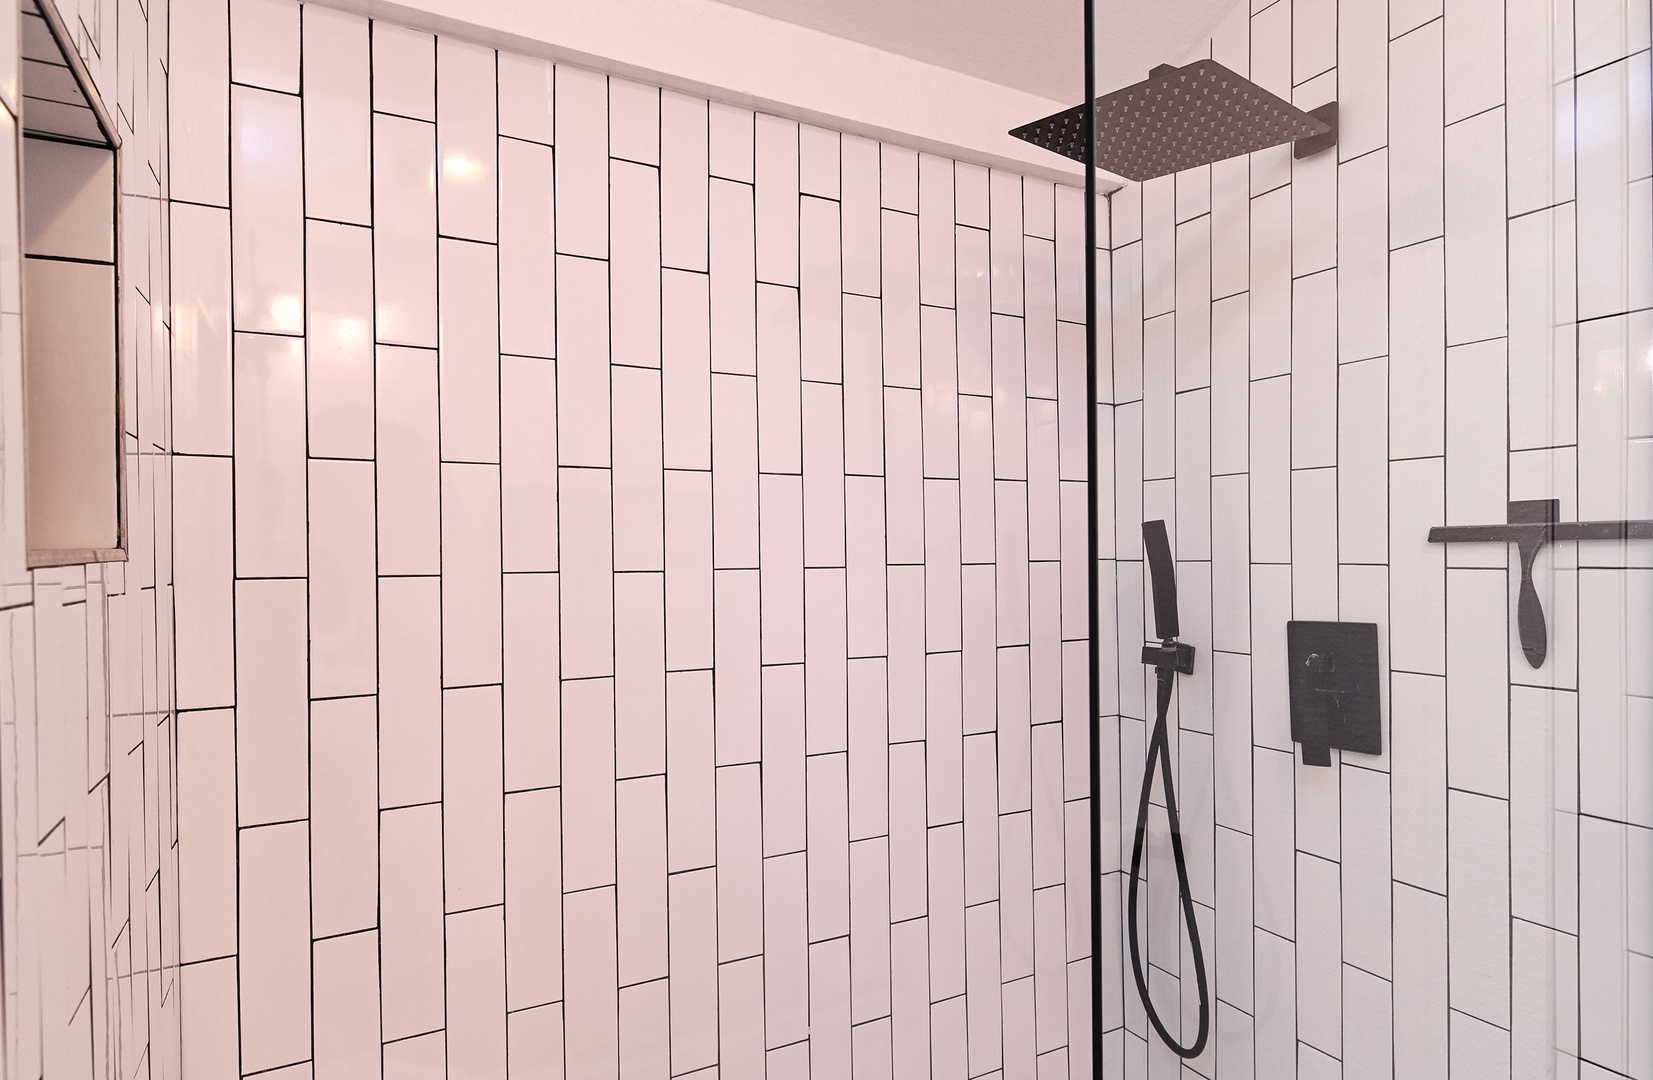 The king en suite bathroom includes a spacious vanity & walk-in shower